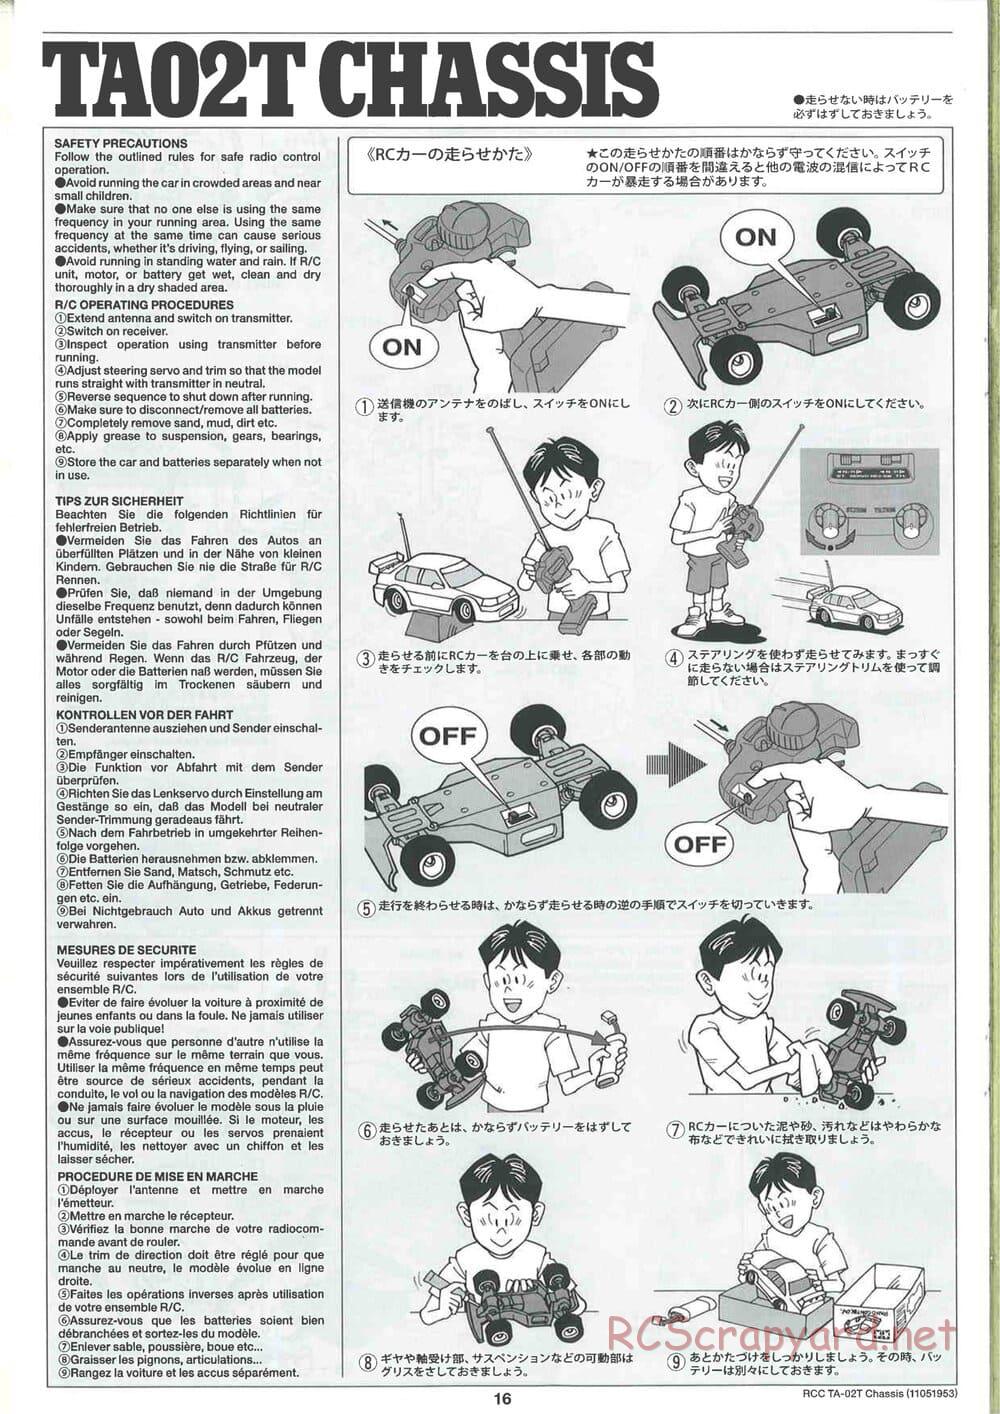 Tamiya - TA-02T Chassis - Manual - Page 16